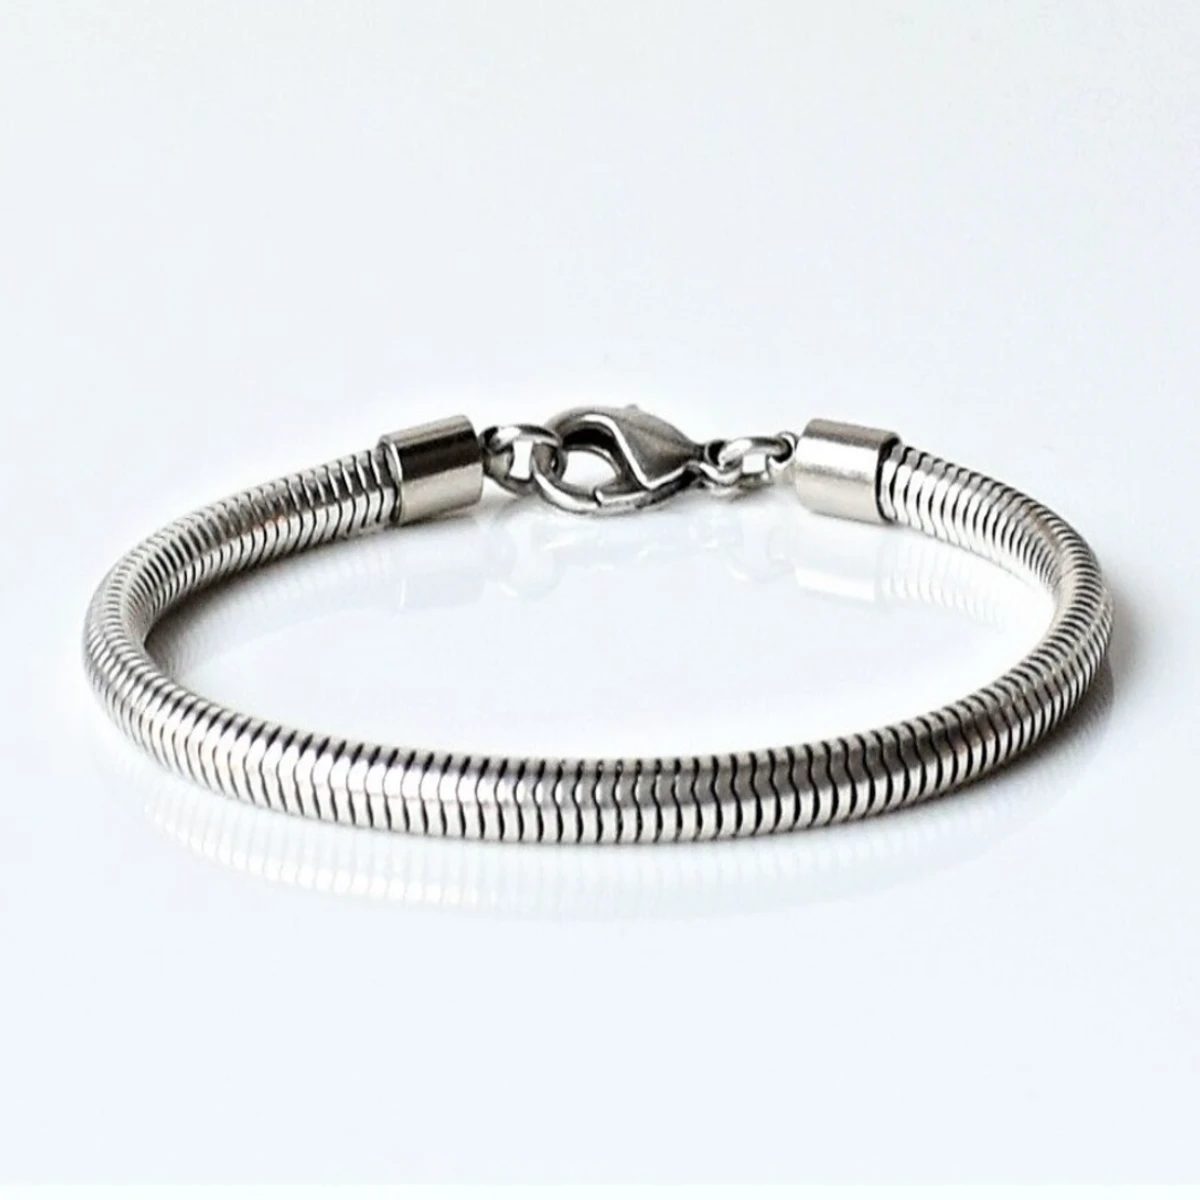 Fashionabel Sanke Chain Bracelet For Men